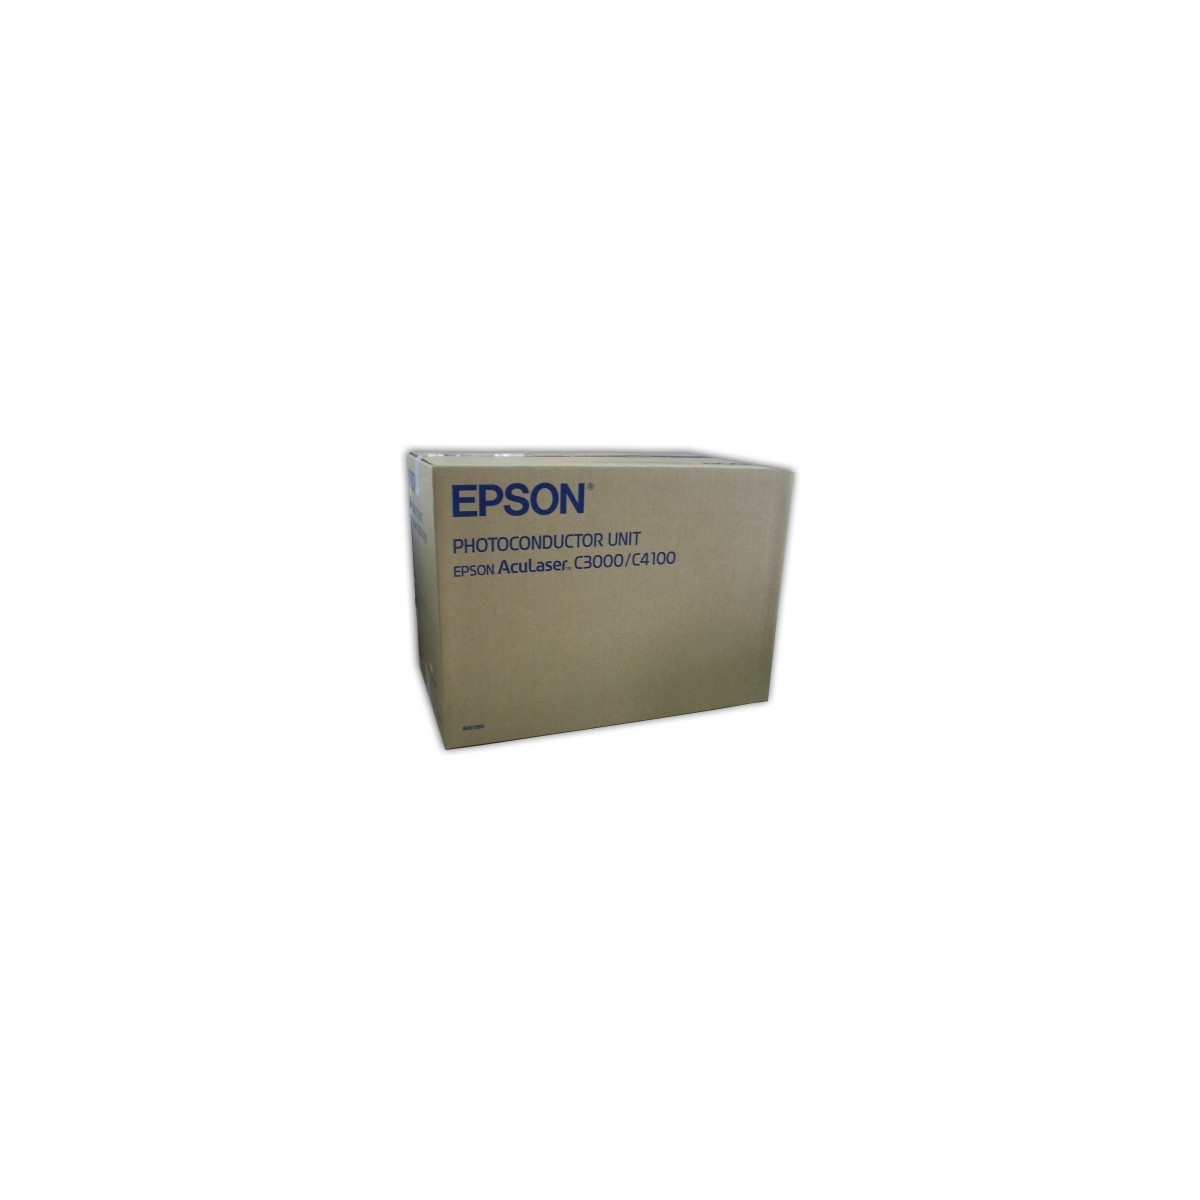 Epson AcuLaser C3000 - Drum Cartridge 30,000 sheet